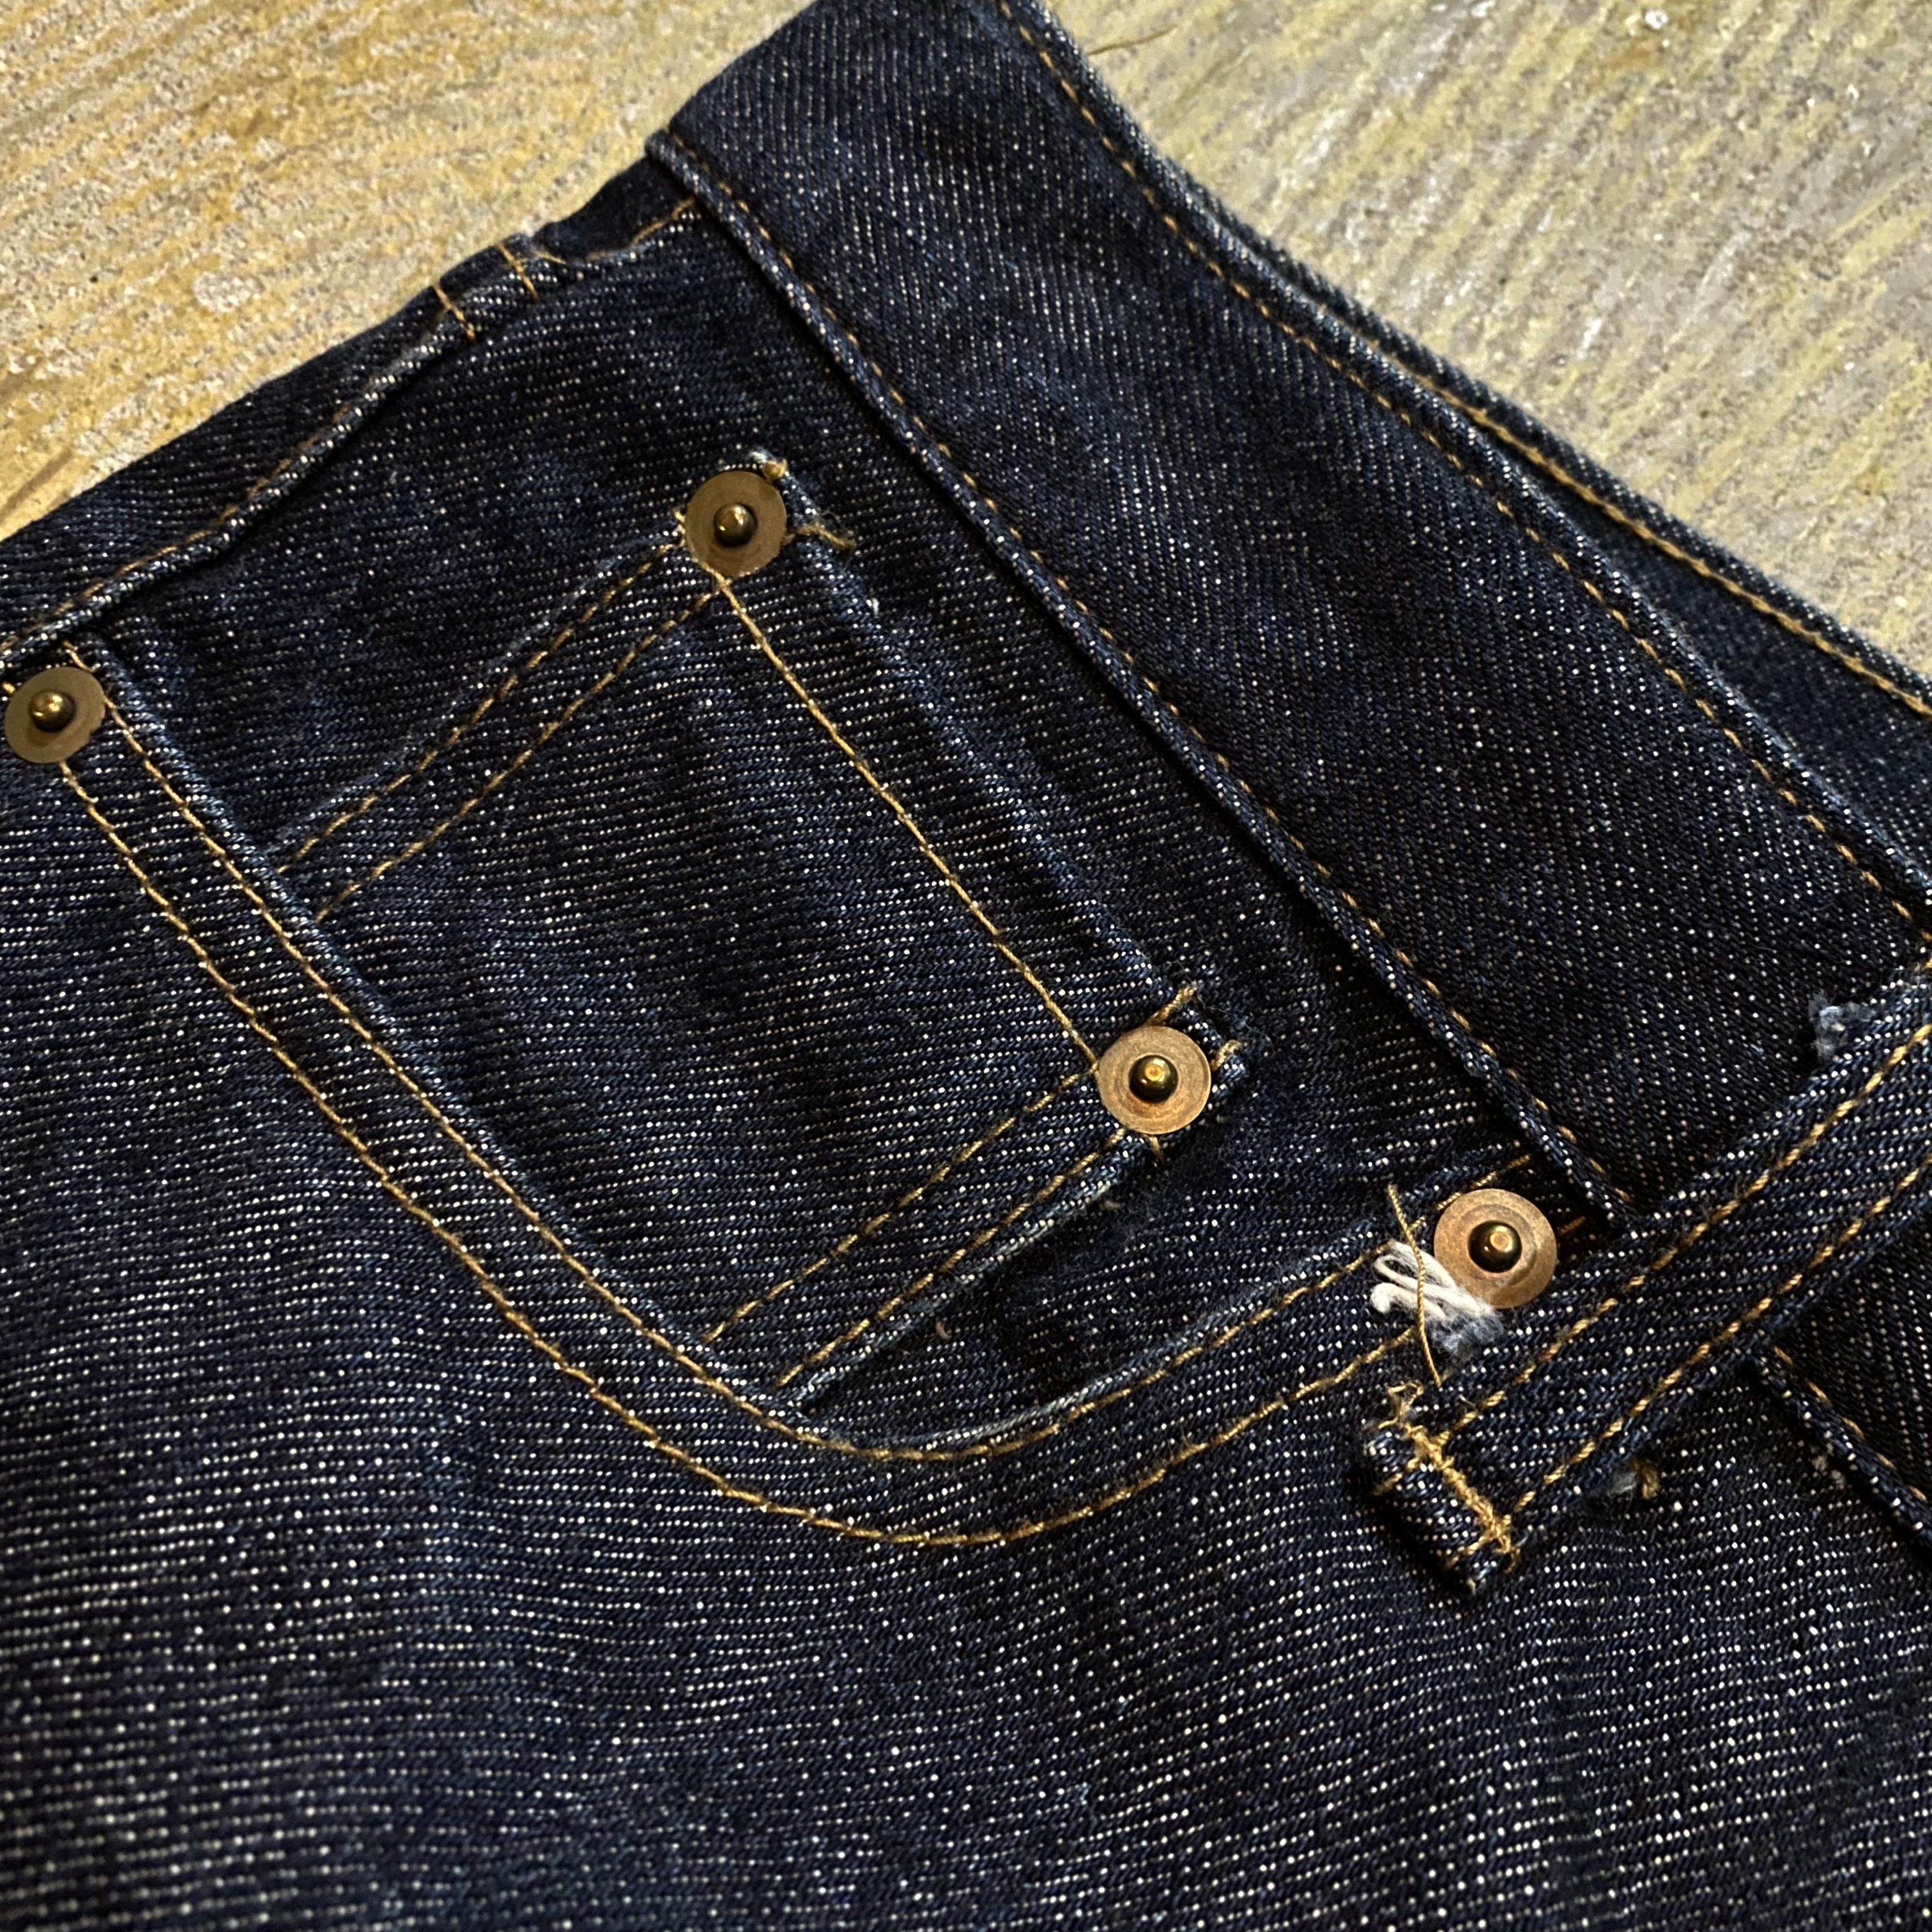 ASIAN CAN CONTROLERZ design denim pants | Vintage.City